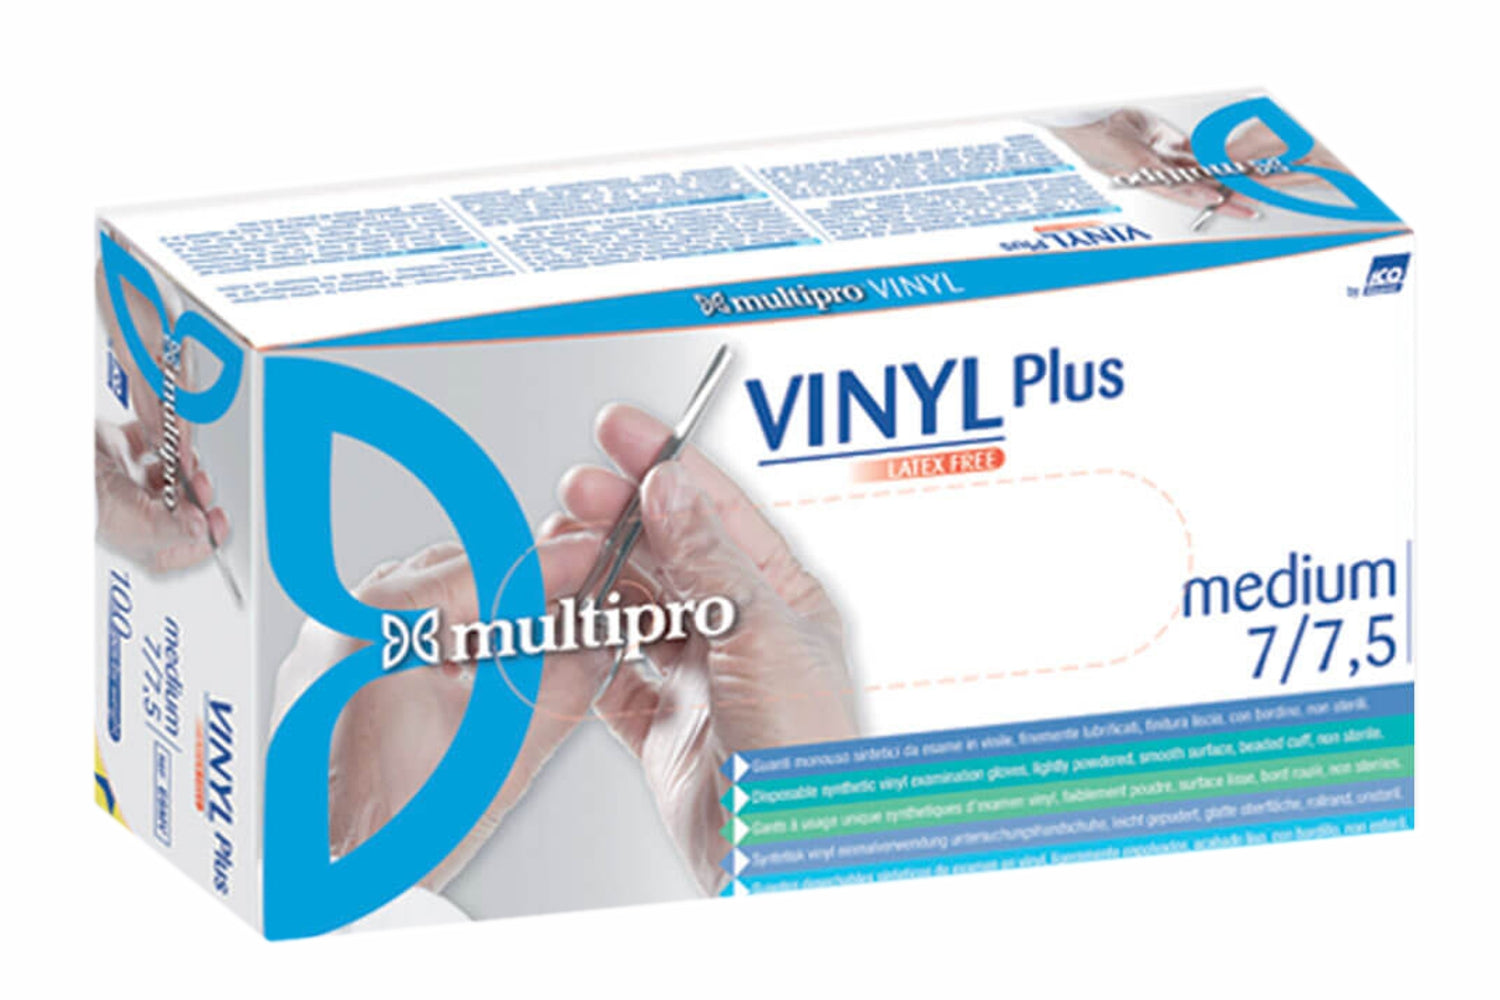 Vinyl plus Multipro guanti monouso in vinile con polvere icoguanti